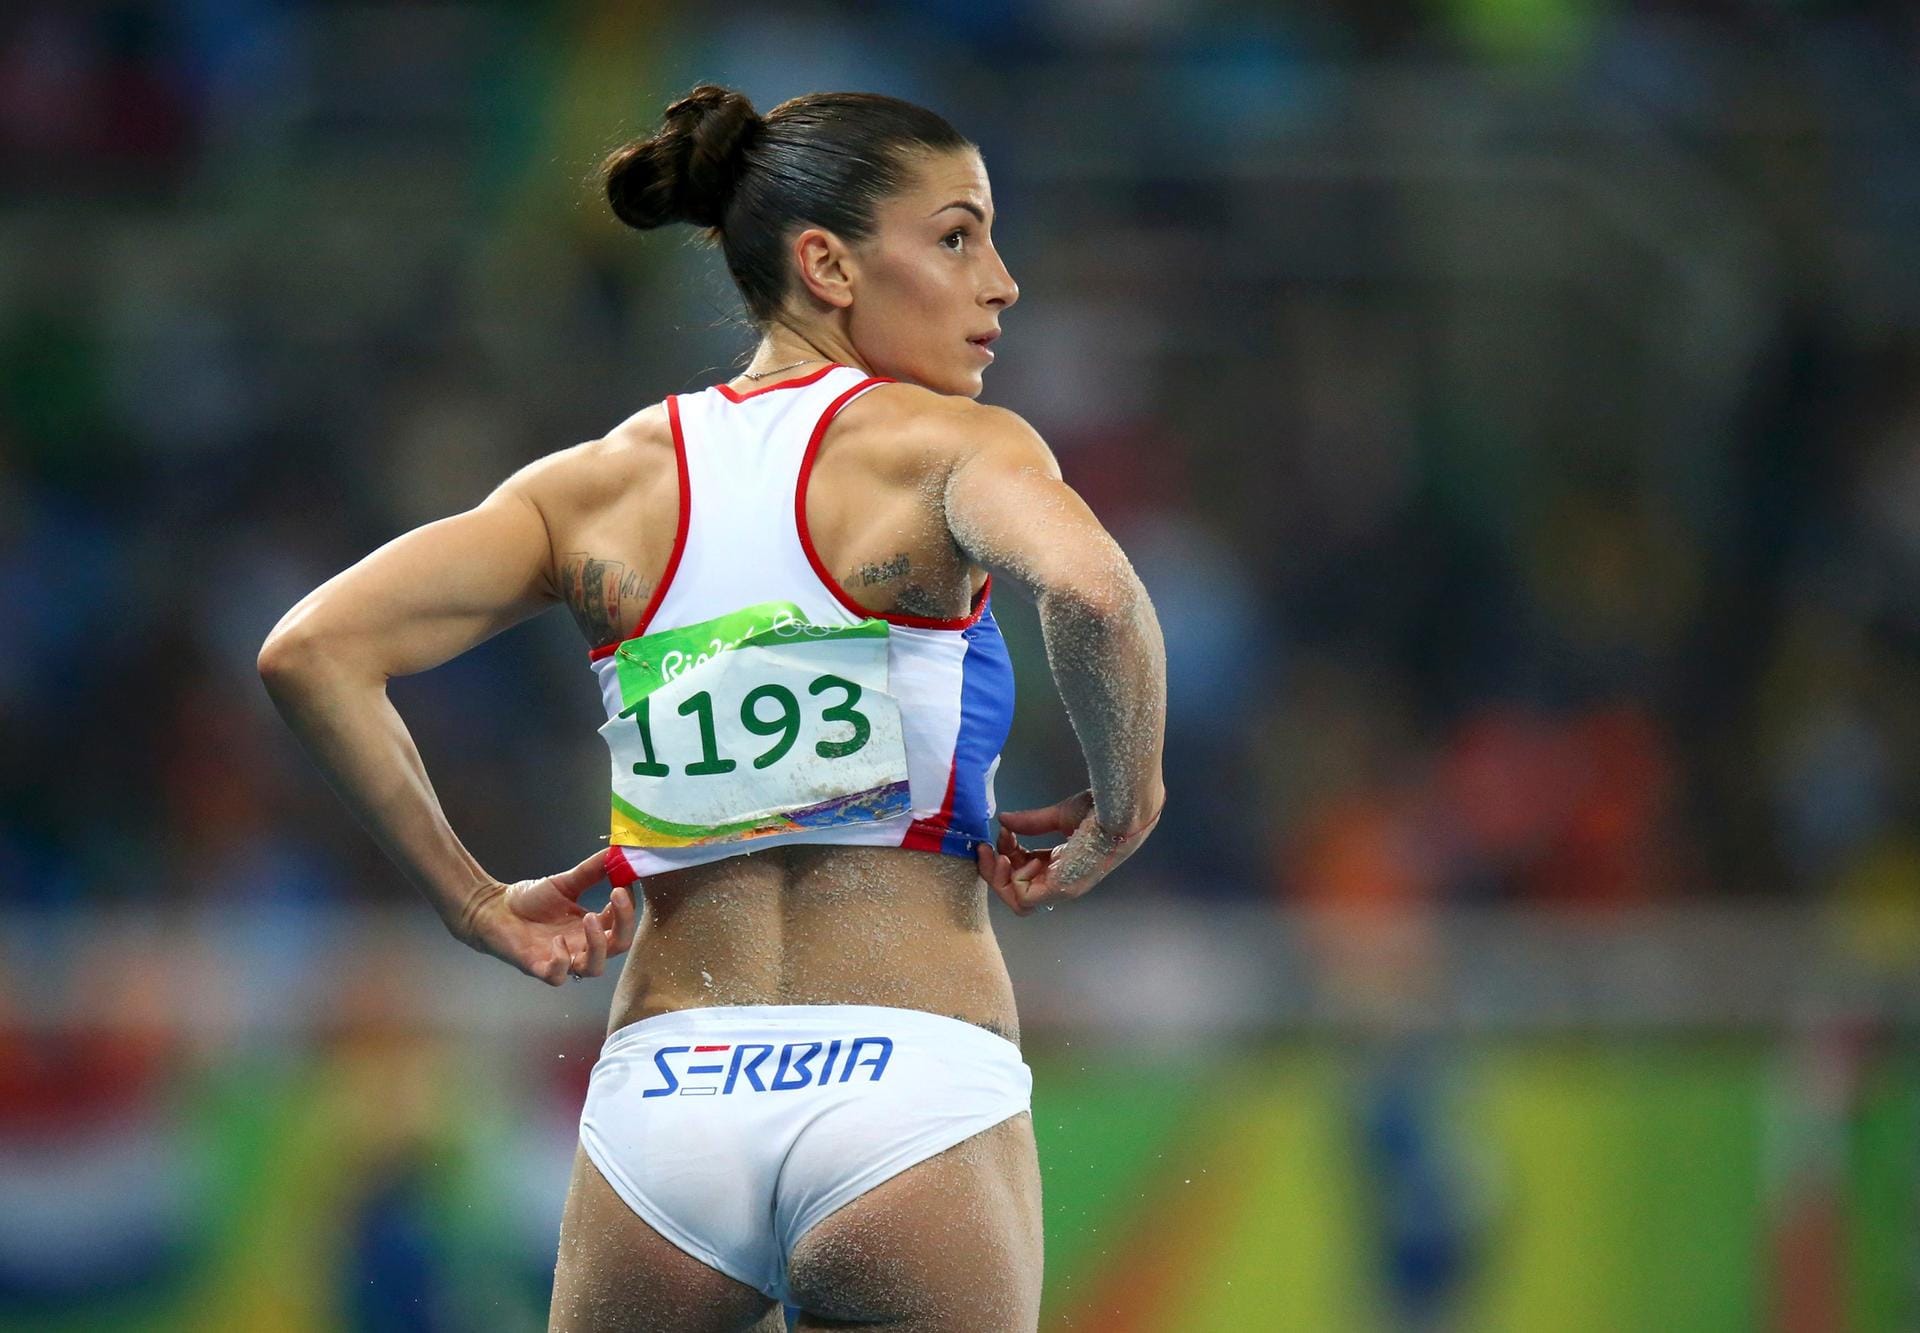 Auch ein schöner Rücken kann entzücken: Weitspringerin Ivana Spanovic aus Serbien gefiel auch mit Leistung. Sie wurde Dritte.